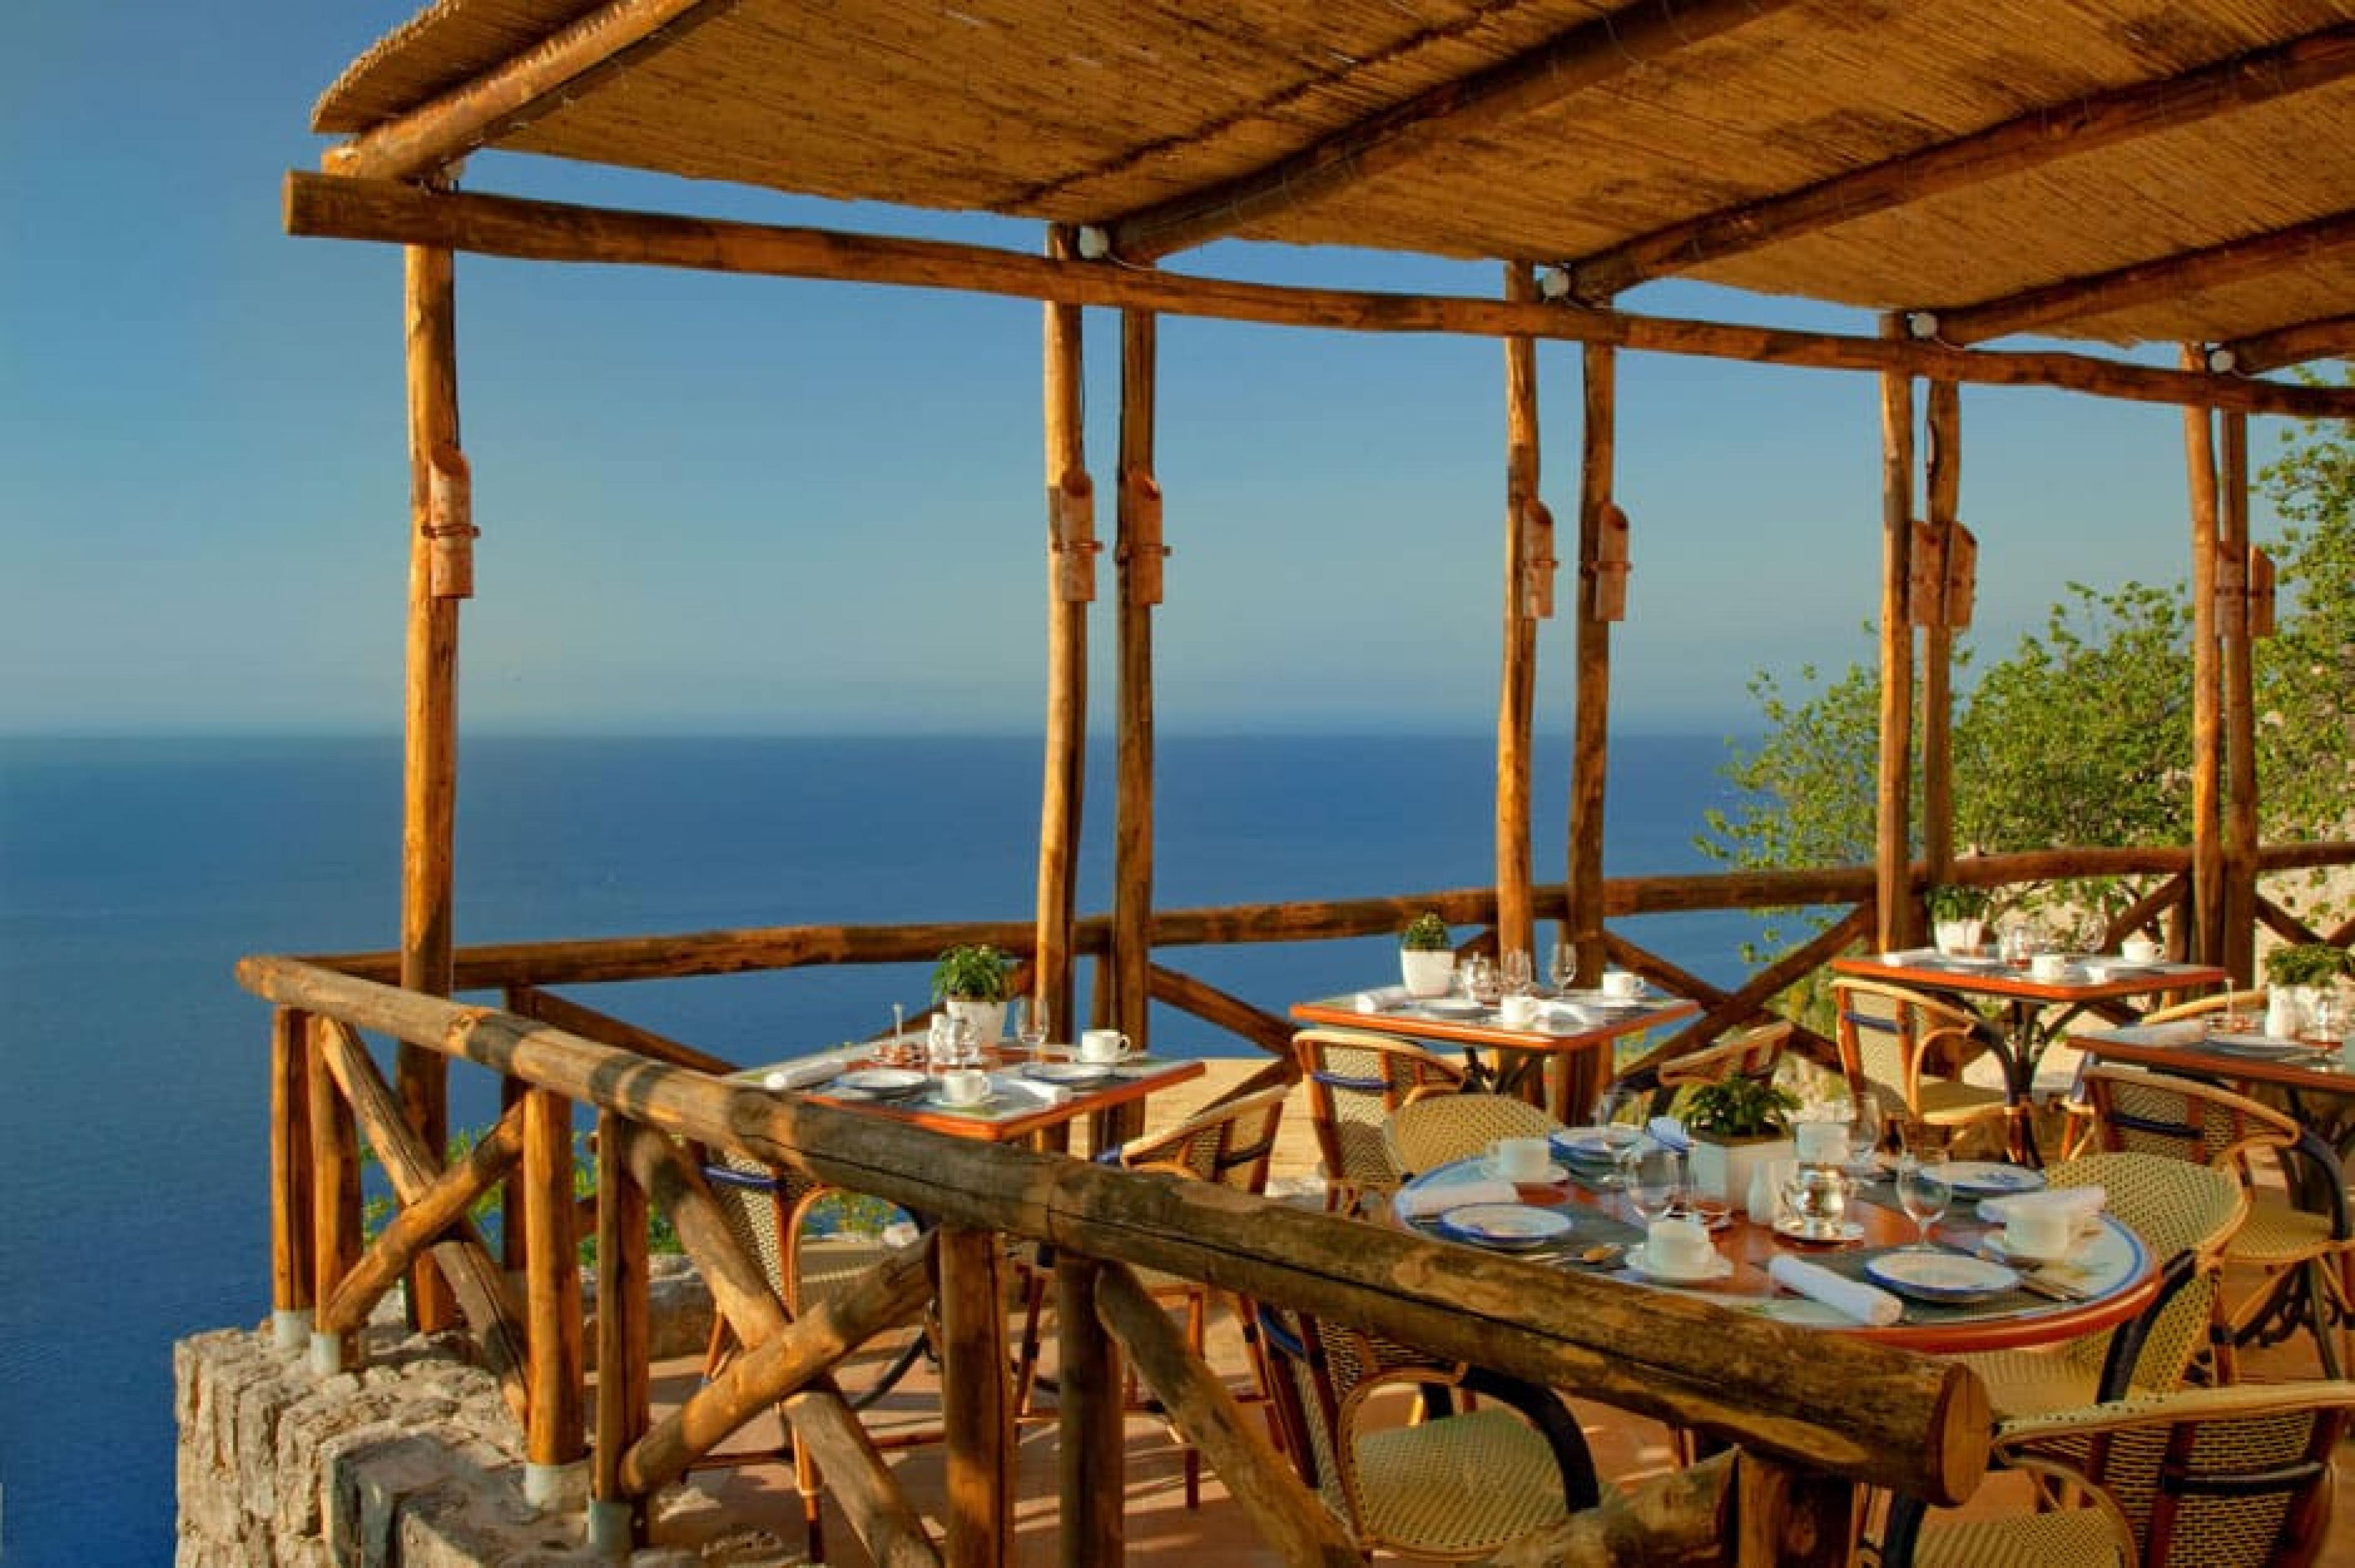 Outdoor dining at Il Refettorio at Monastero​ Santa Rosa​, Amalfi Coast, Italy